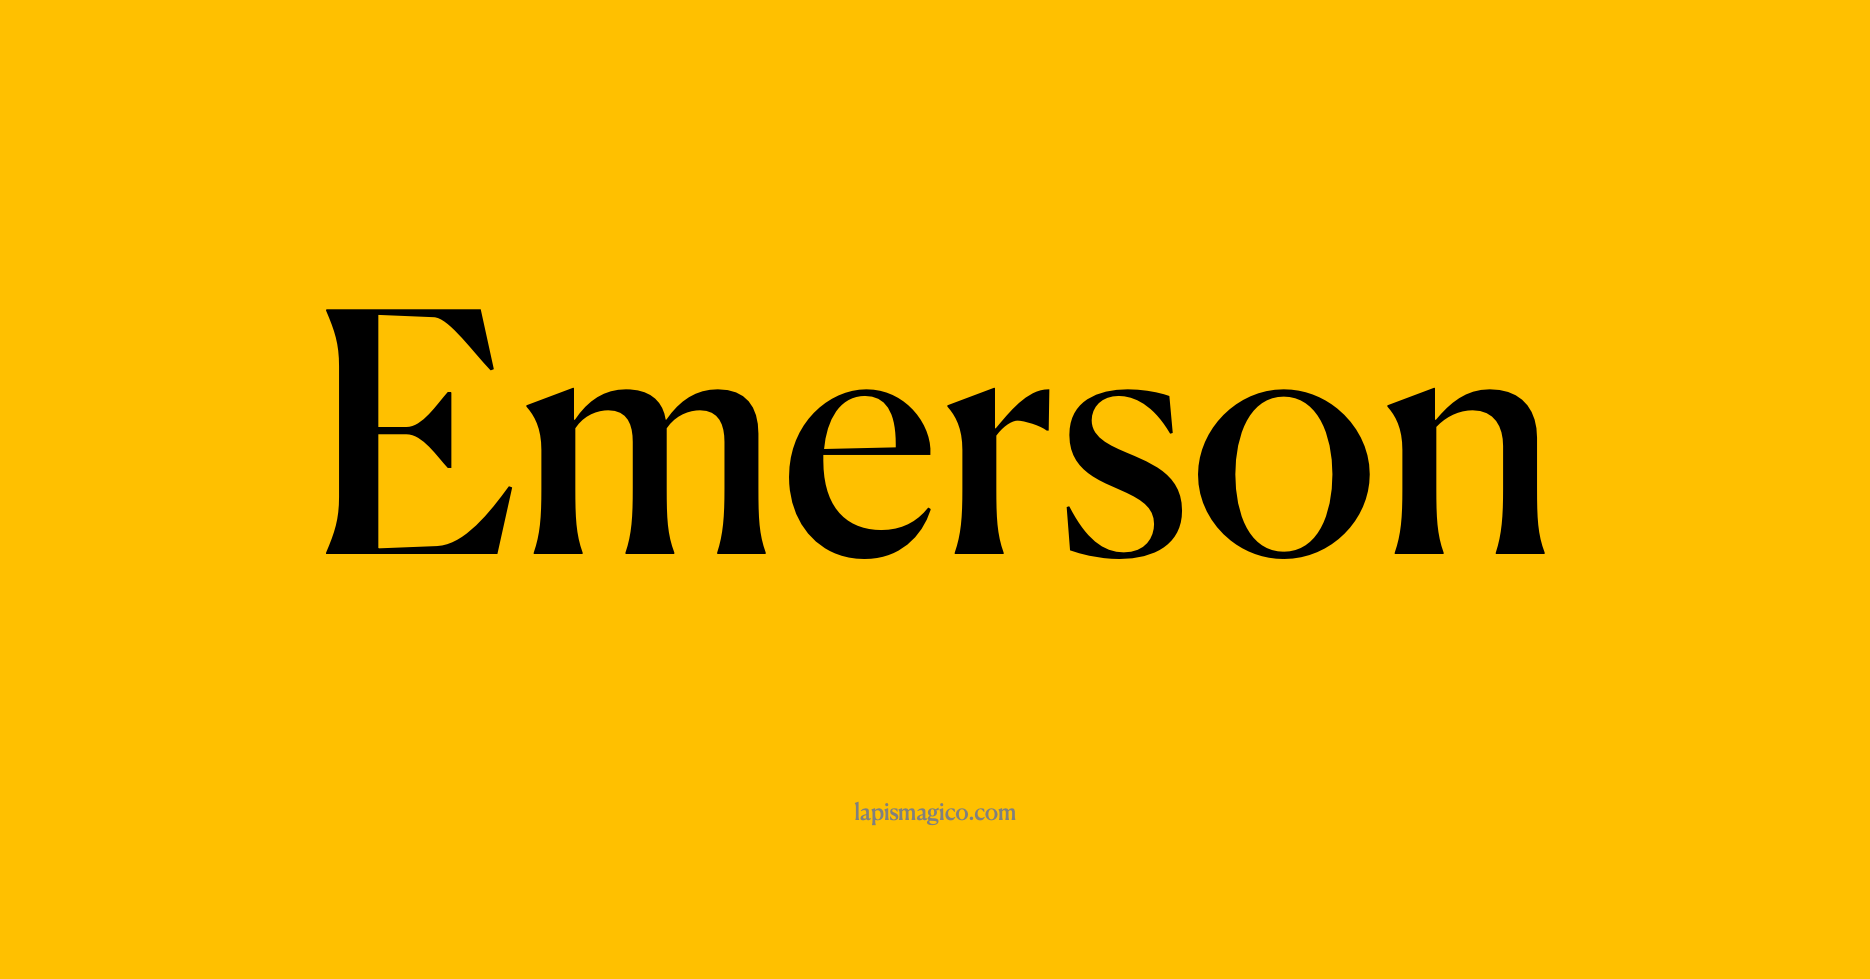 Nome Emerson